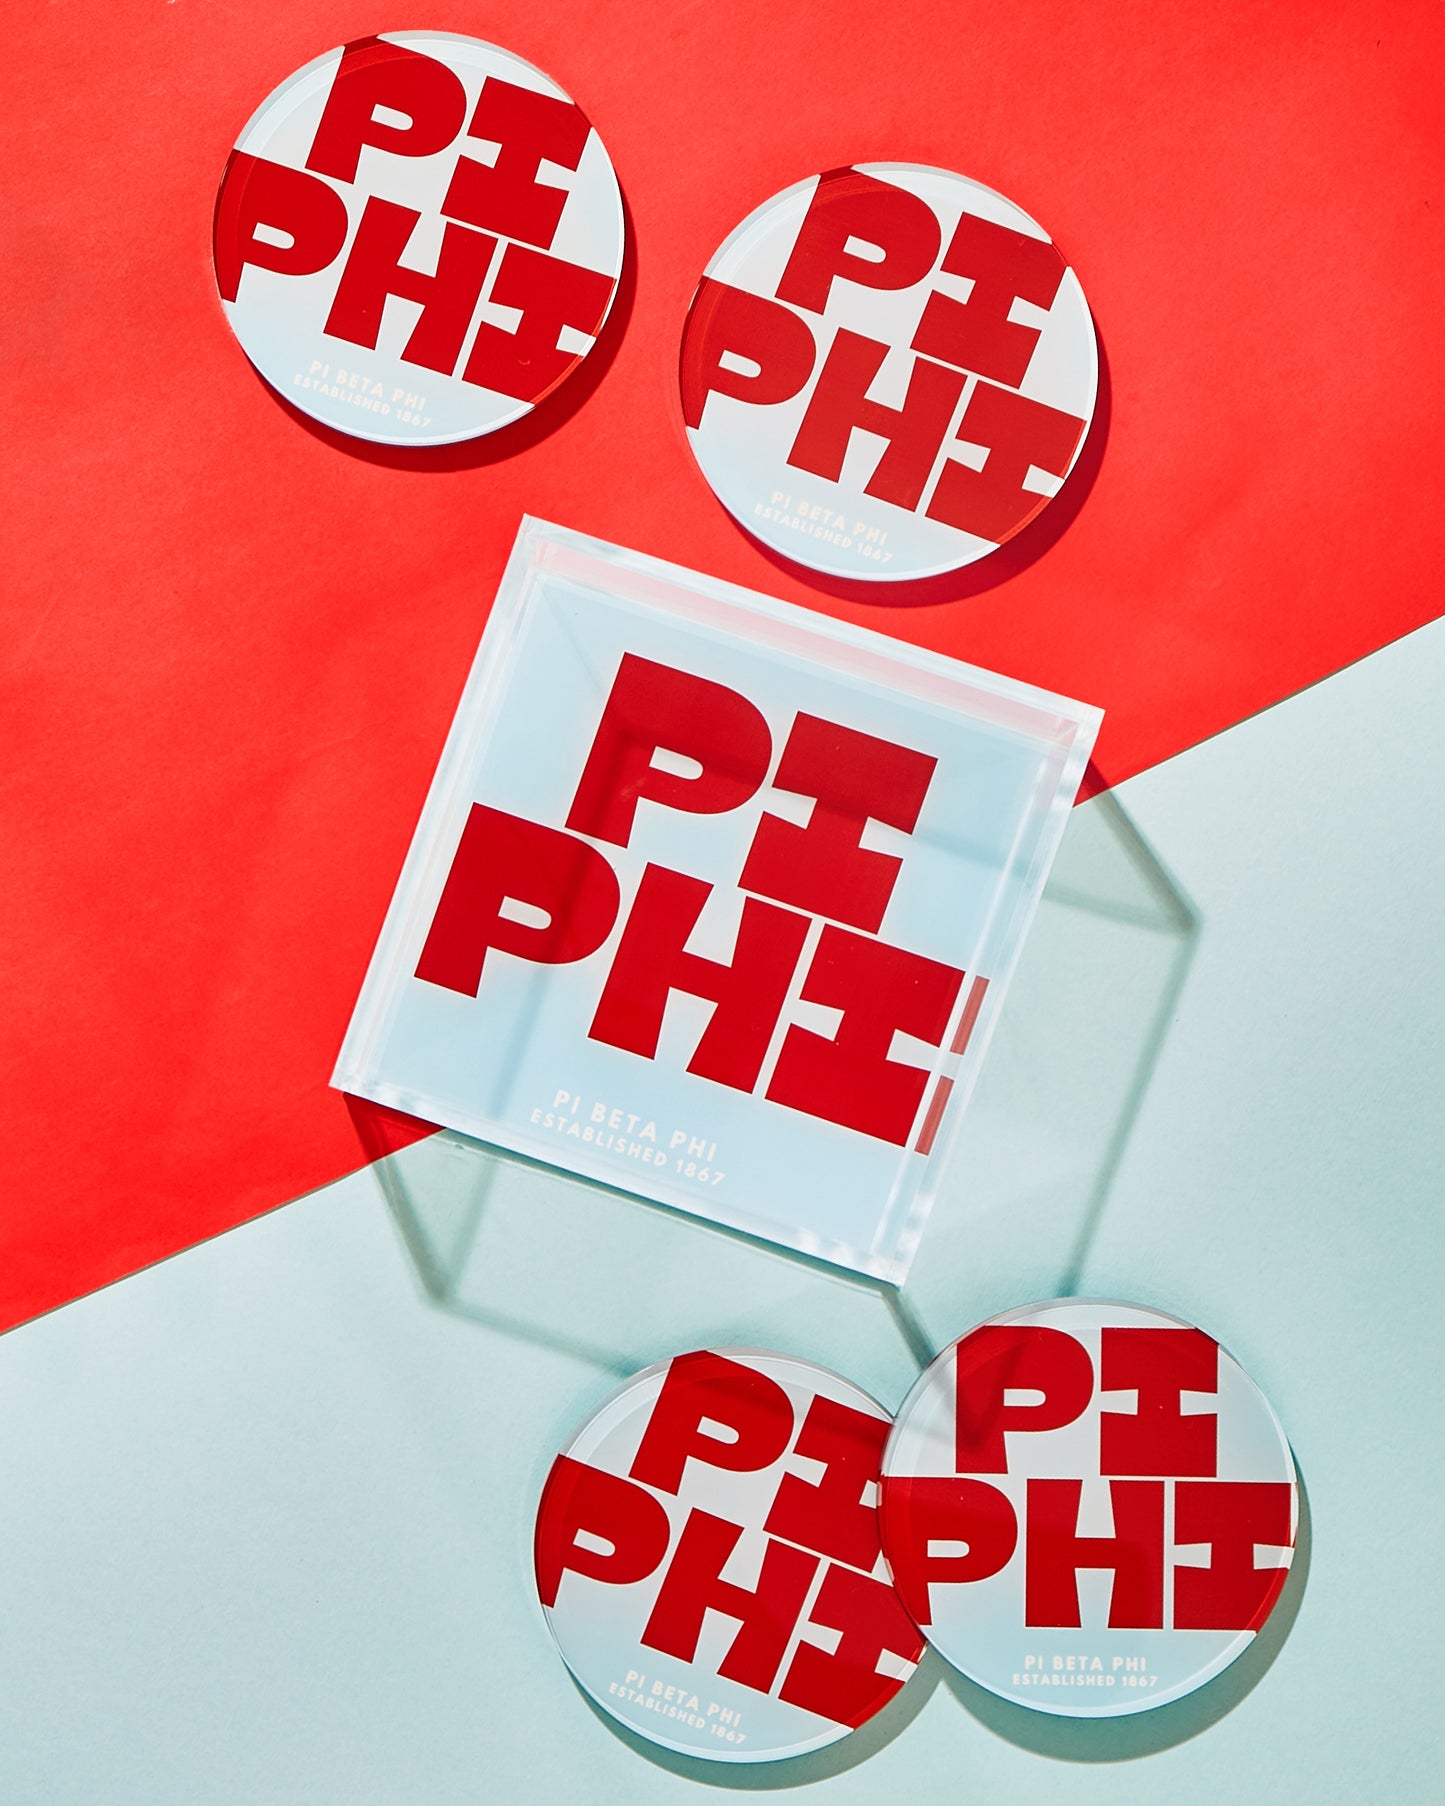 Pi Beta Phi Coasters